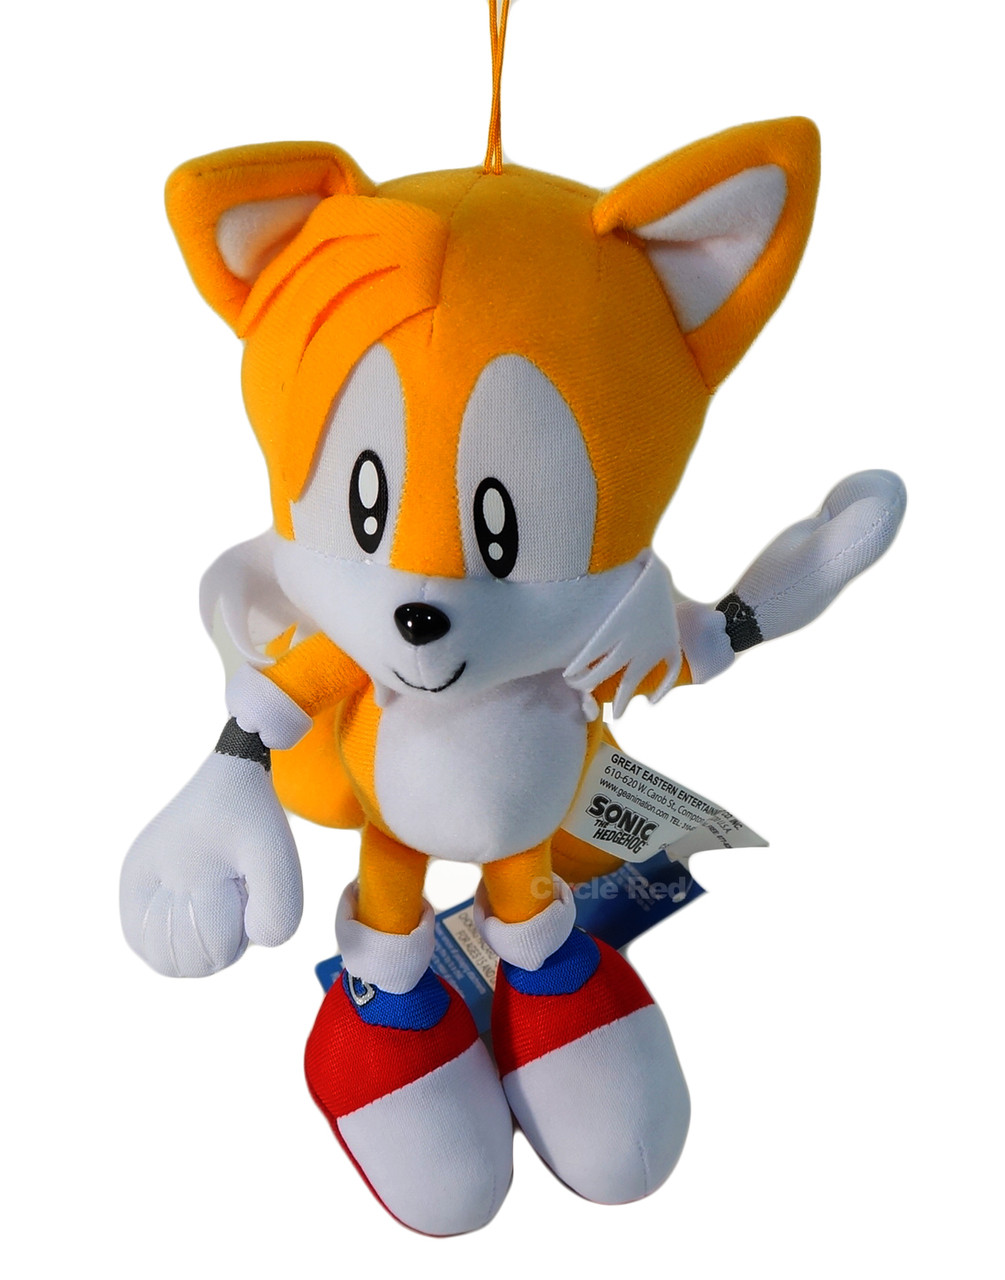 Sonic The Hedgehog Plush